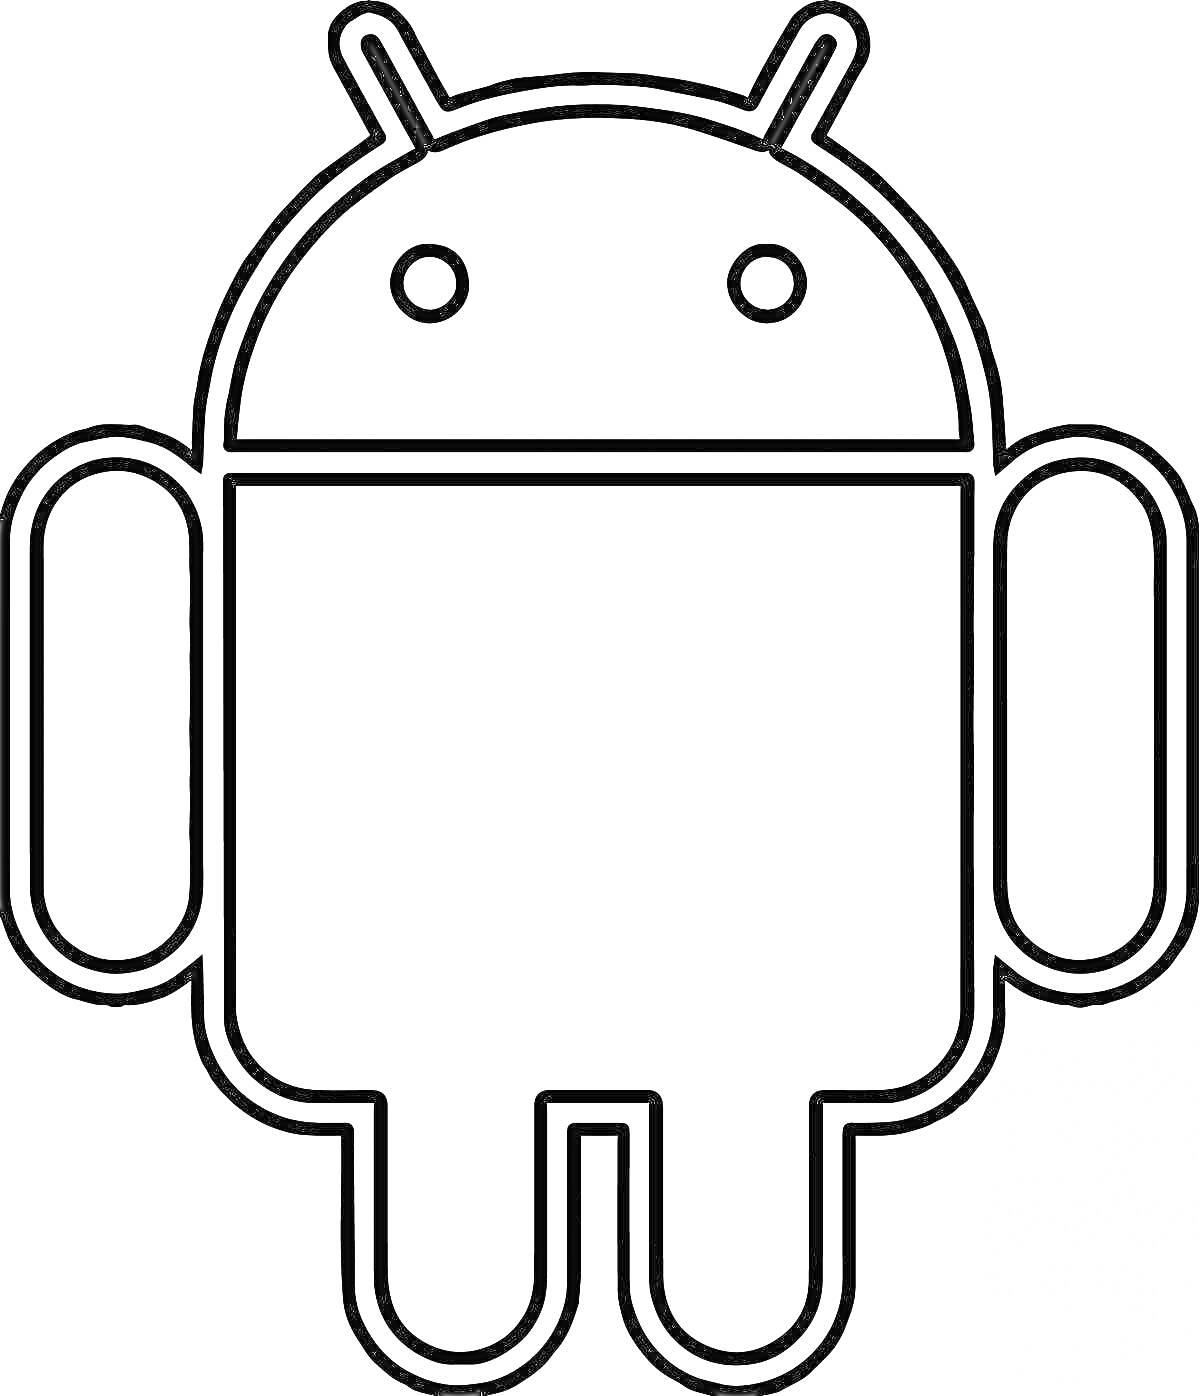 Android-робот с антеннами, глазами и конечностями